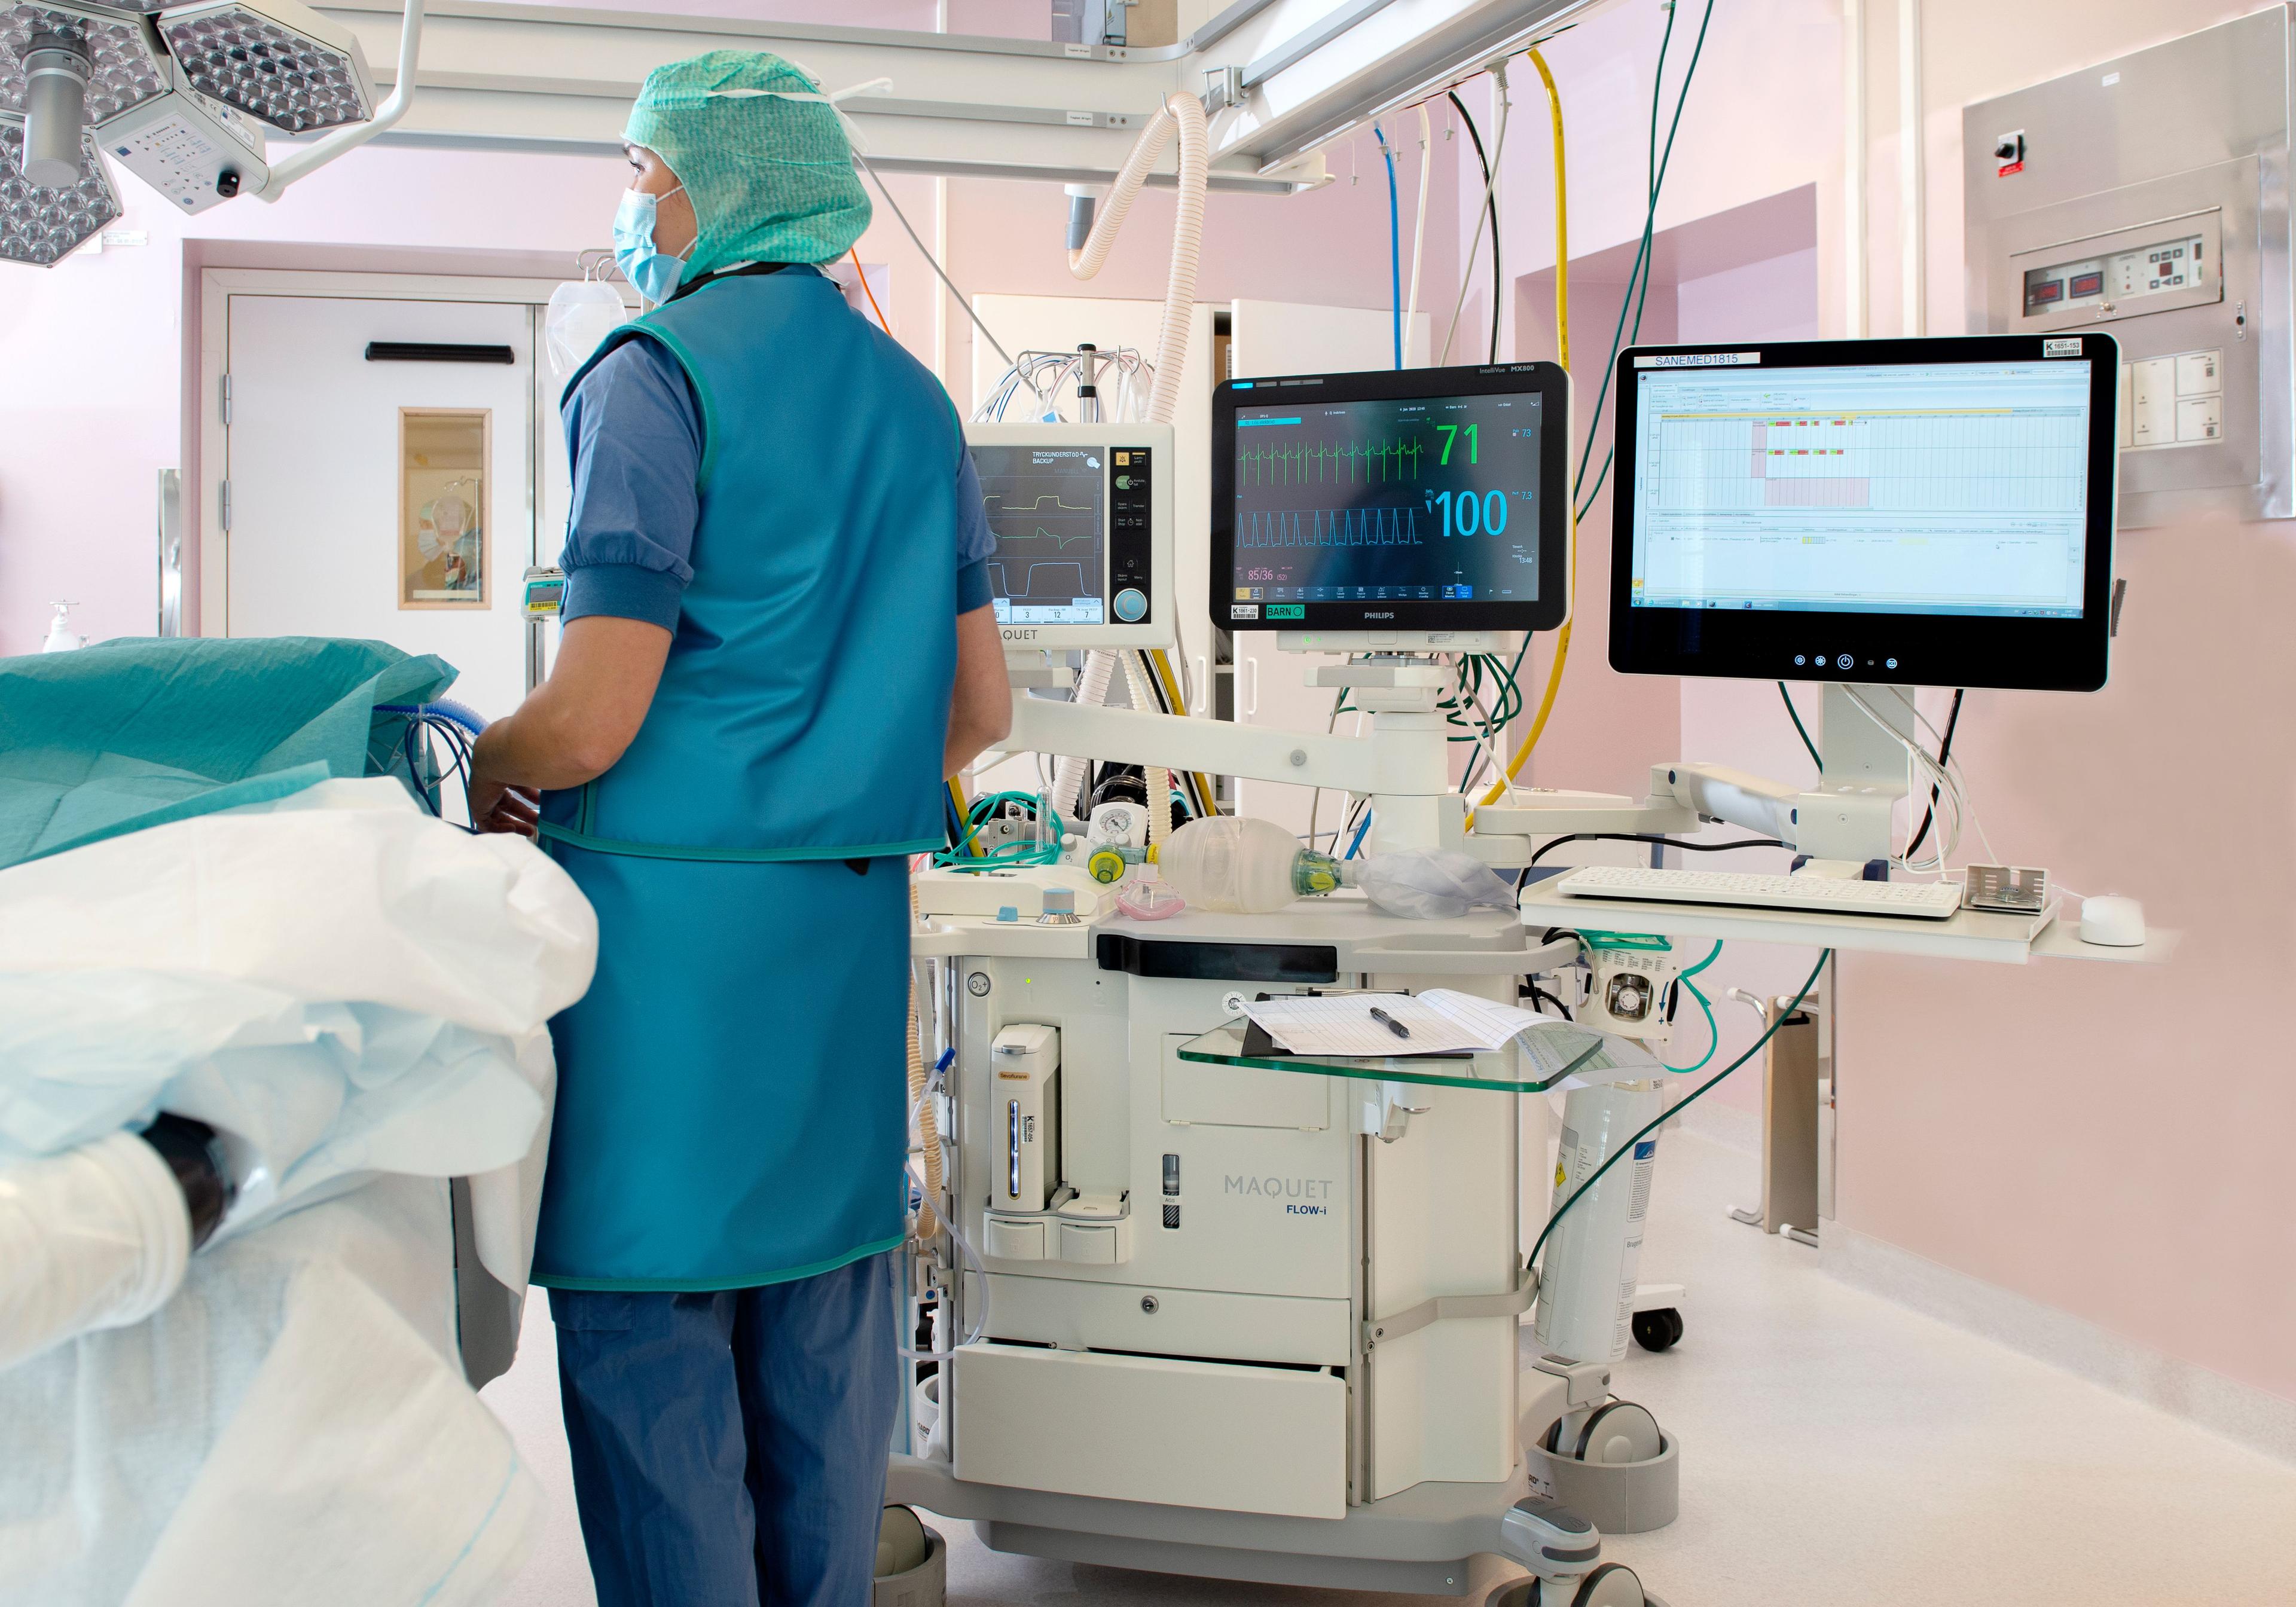 Sovmaskin på ett operationsrum. En sjuksköterska i blå kläder och grön mössa står bredvid sovmaskinen.